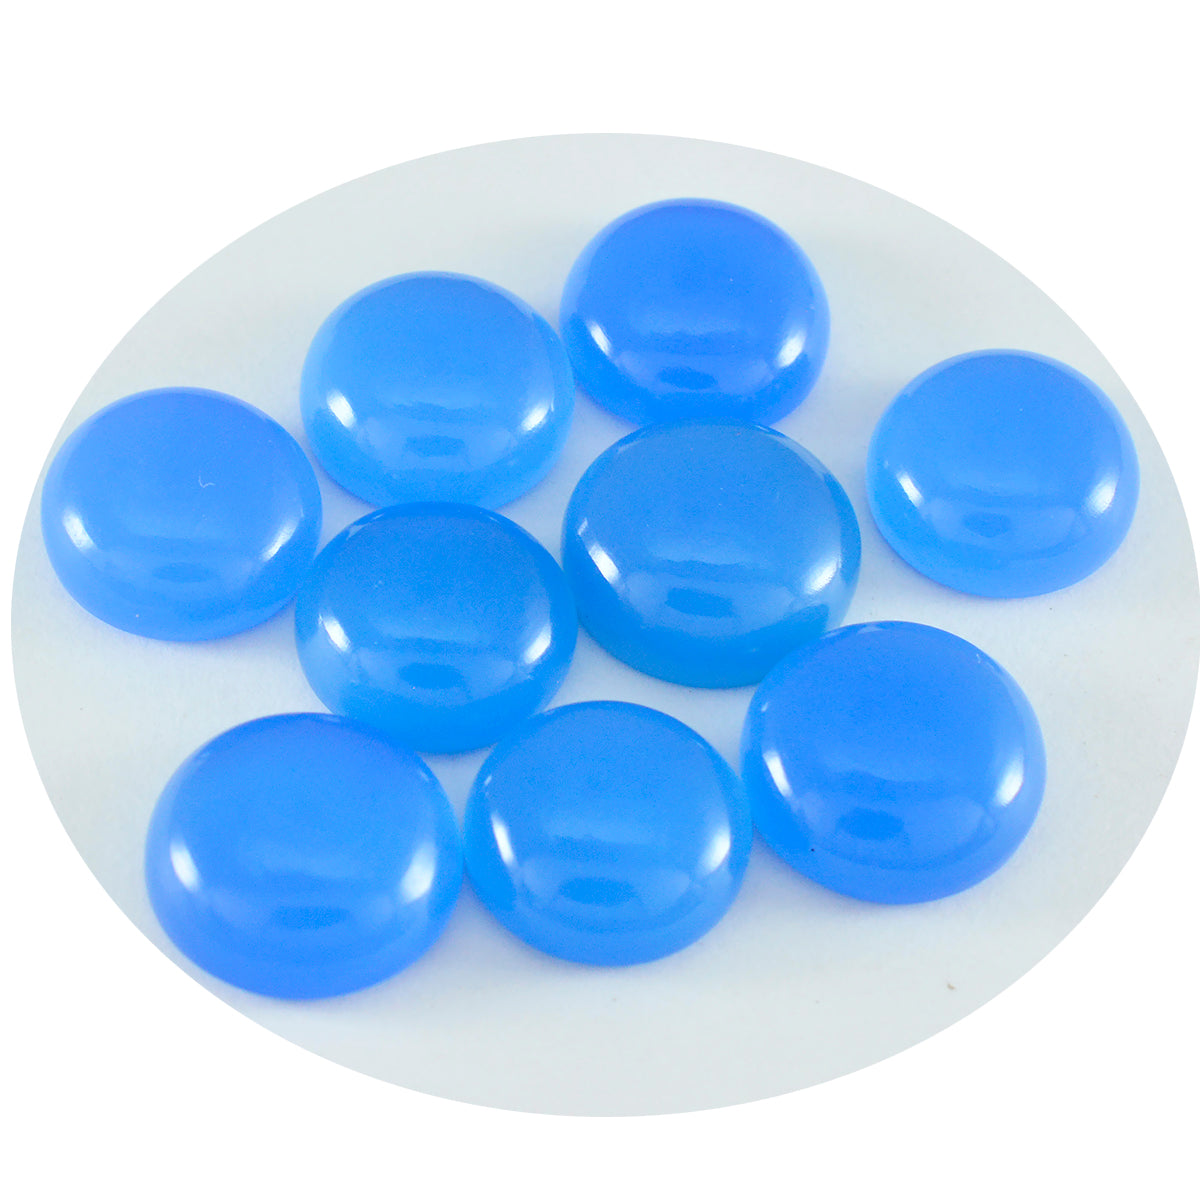 riyogems 1pc cabochon di calcedonio blu 6x6 mm di forma rotonda con gemme di buona qualità